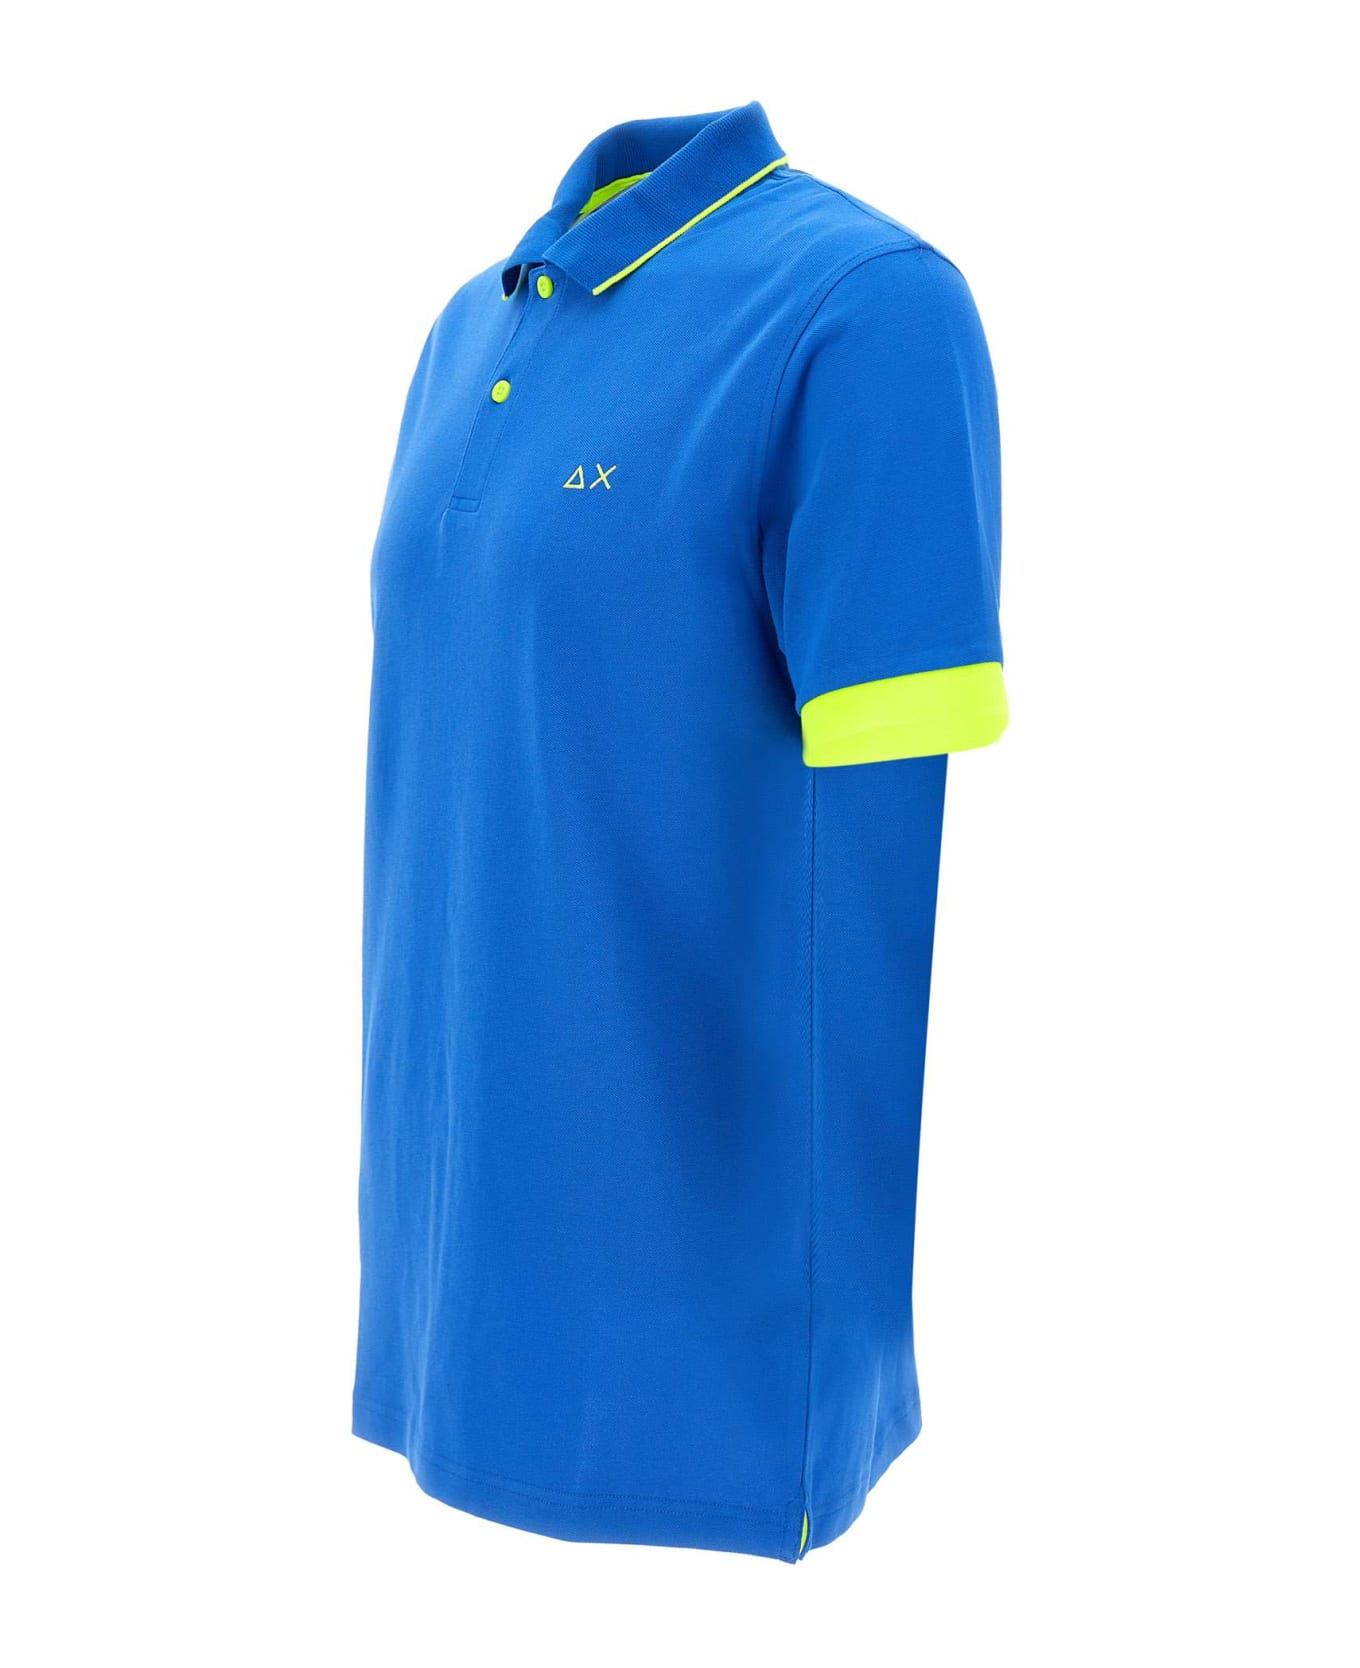 Sun 68 'small Stripe' Cotton Polo Shirt Polo Shirt - ROYAL